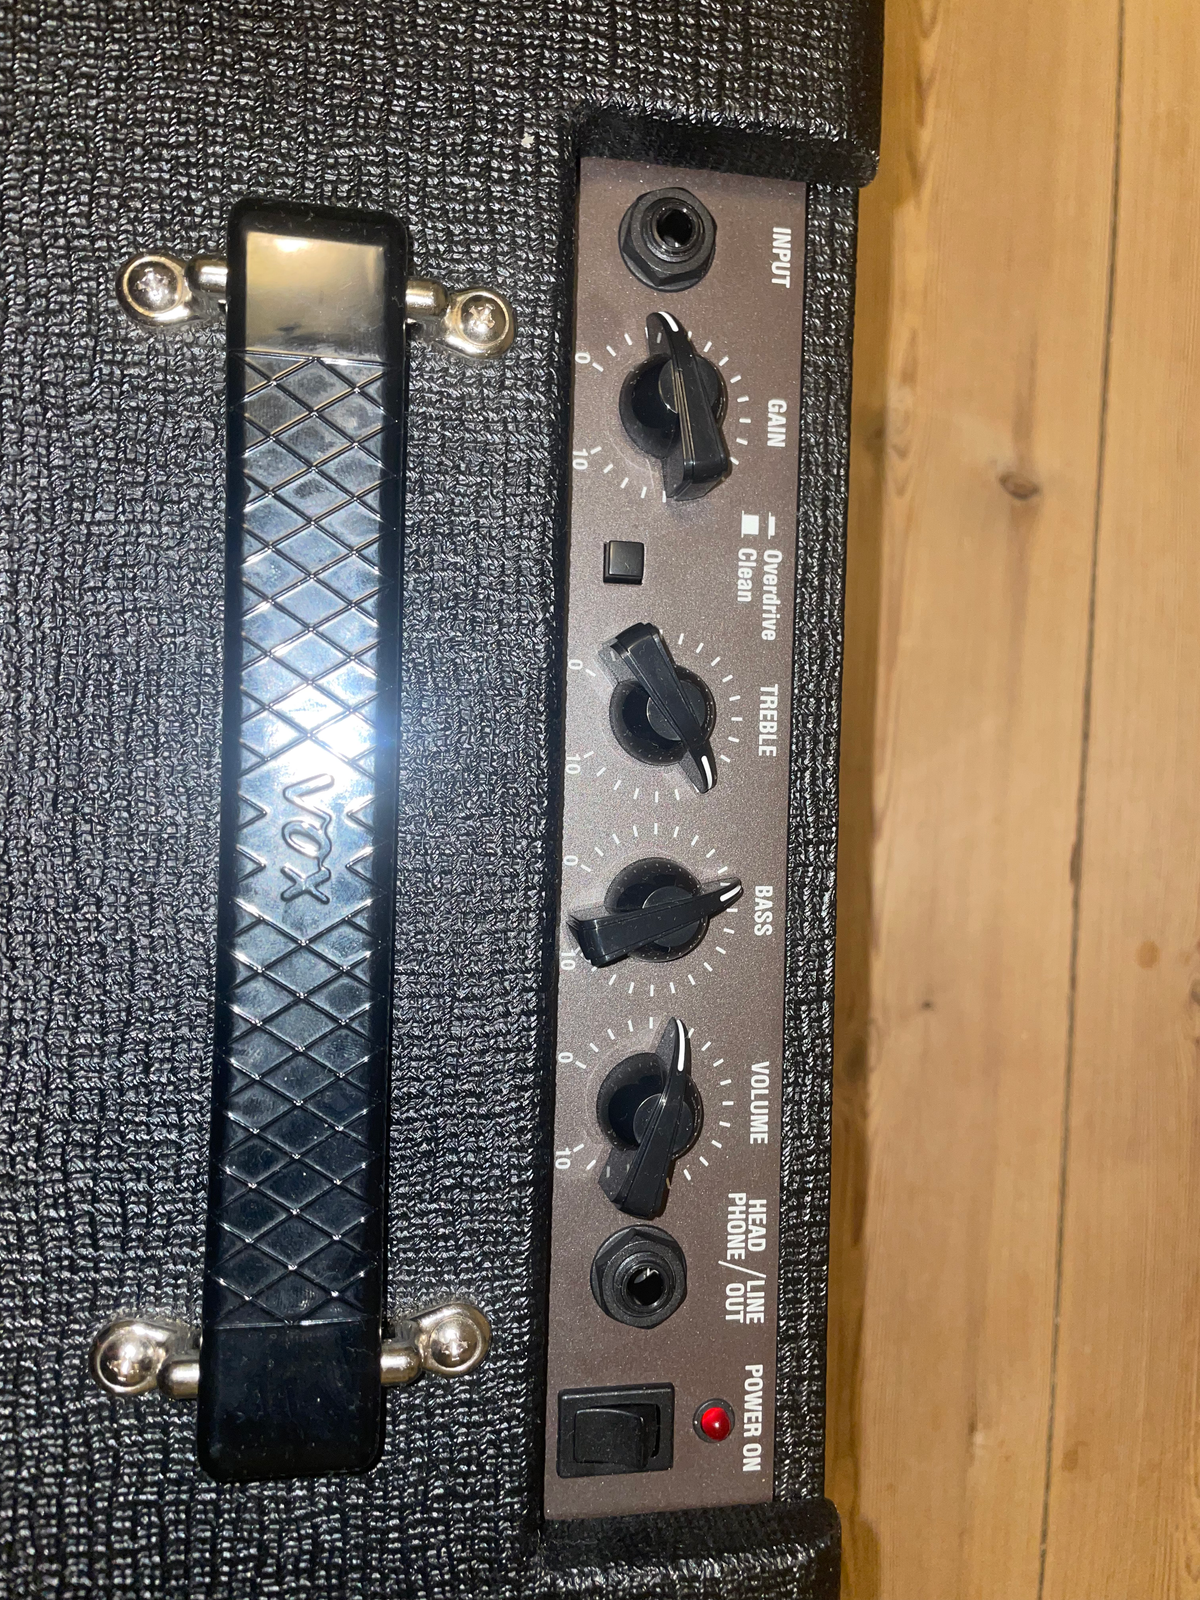 Guitaramplifier, Vox Pathfinder 10, 10 W